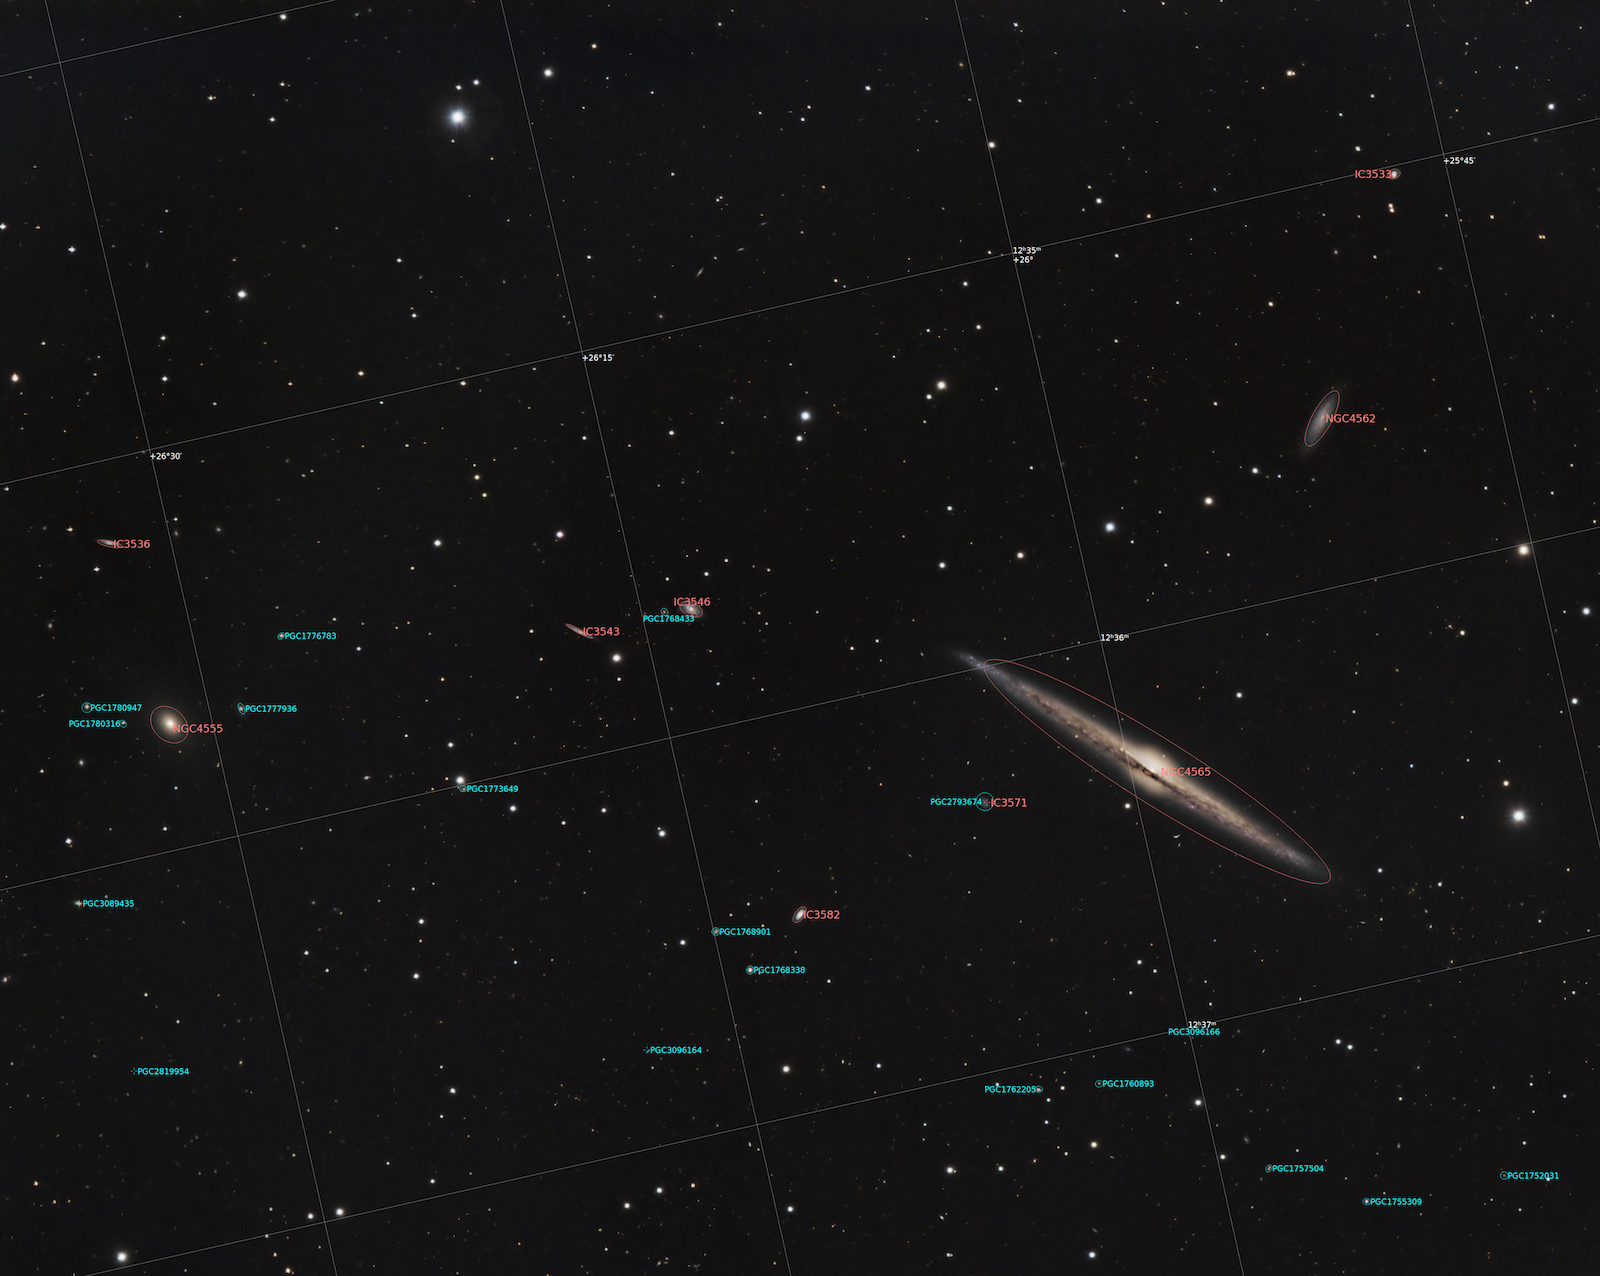 655b39a6b21e4_NGC4565champcompletannote.jpg.b44c8a3e1ca14fed987cc36d7c30330a.jpg